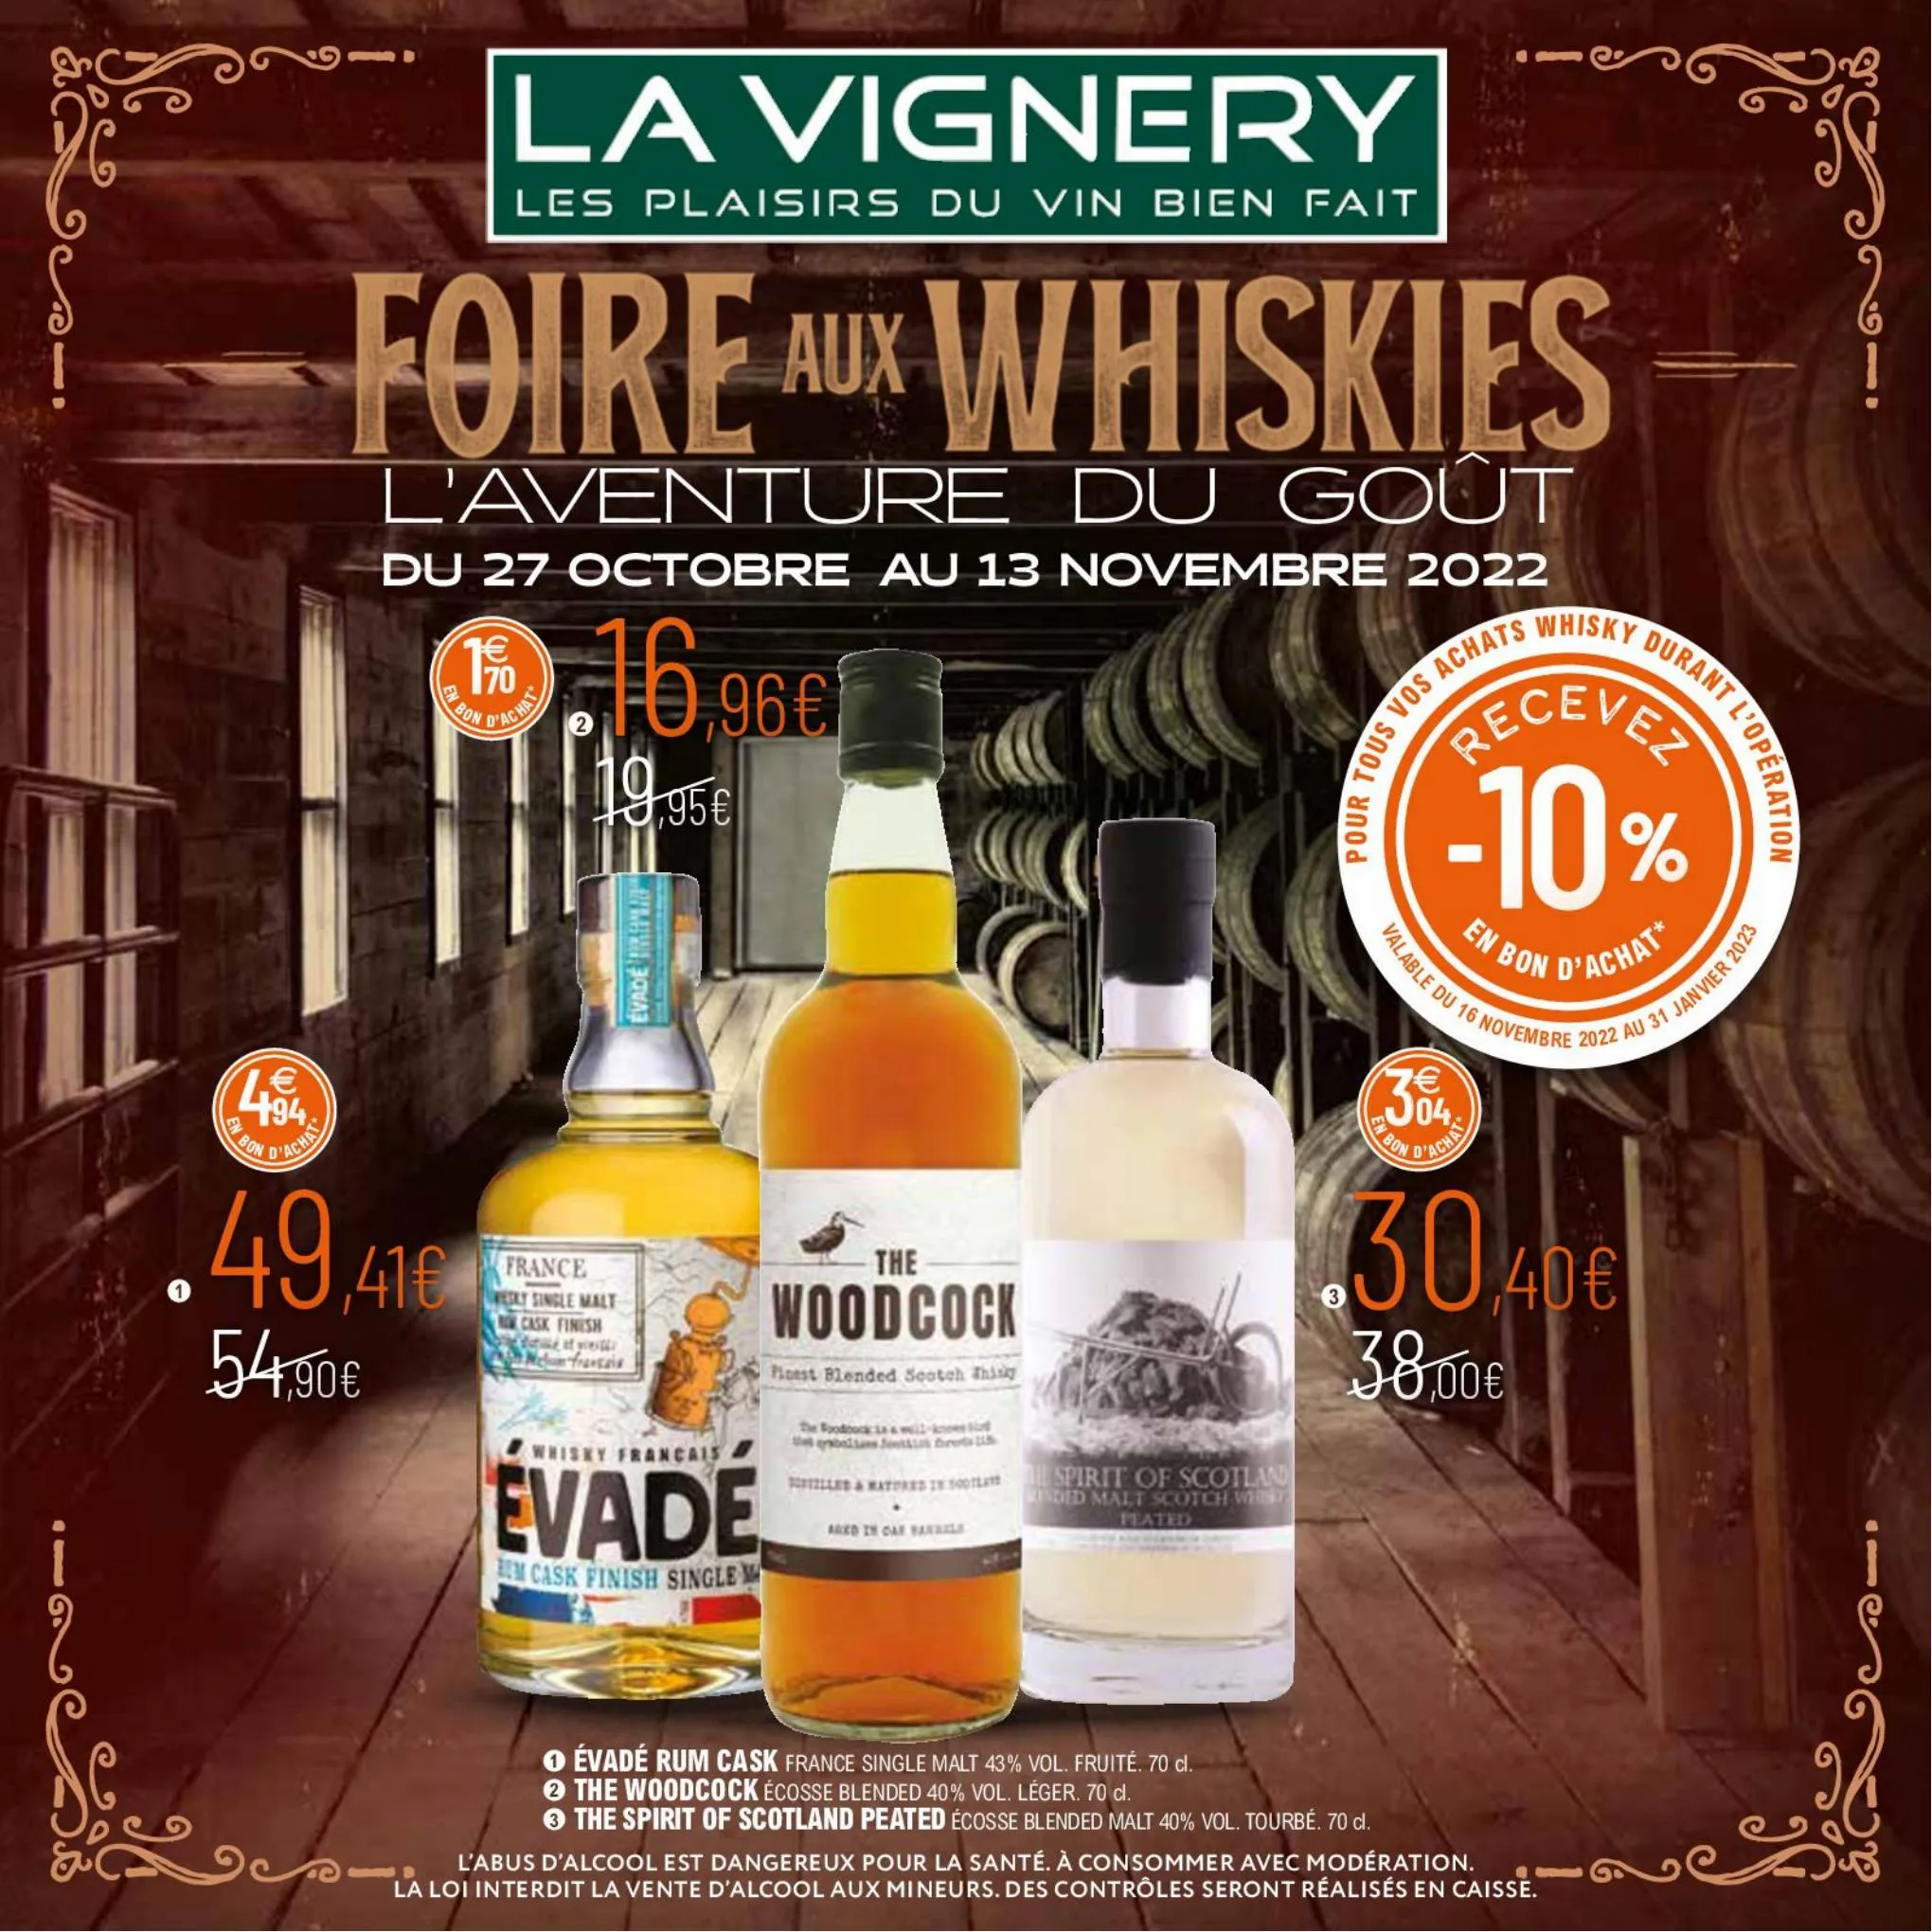 Catalogue Foire aux whiskies 2022, page 00001